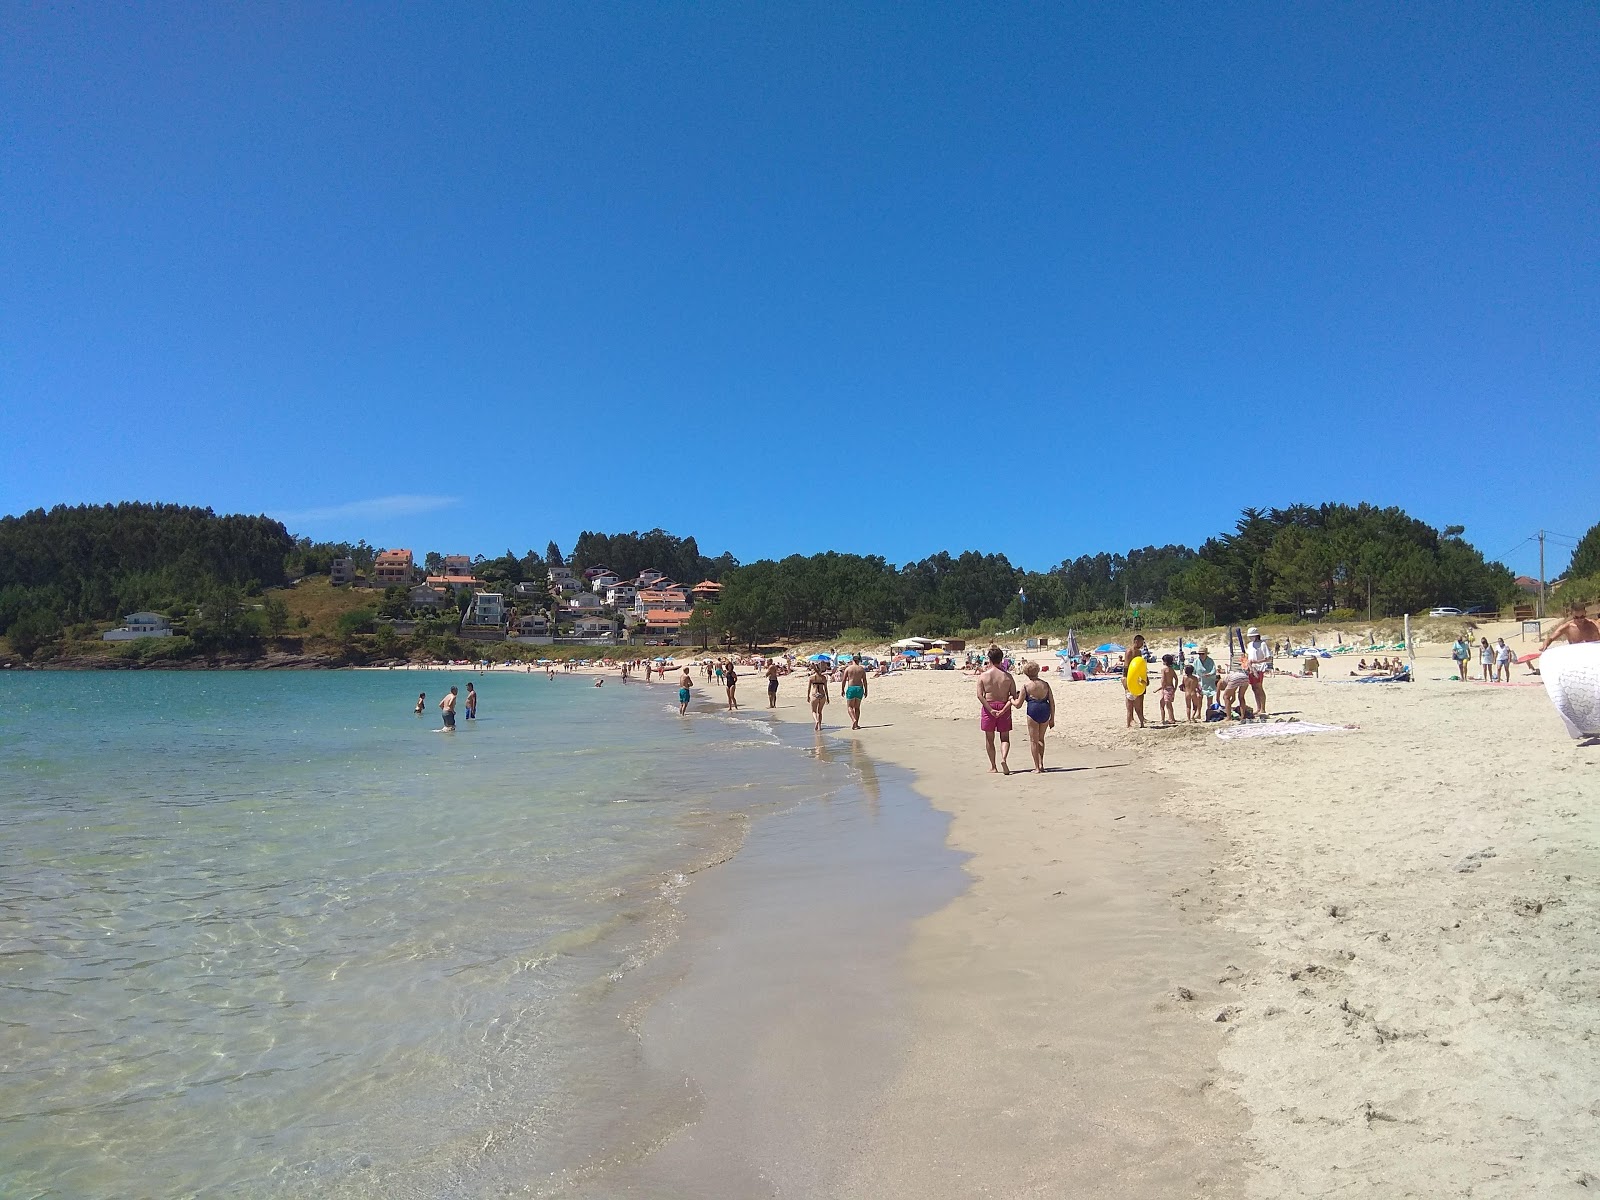 Canelas beach'in fotoğrafı beyaz ince kum yüzey ile